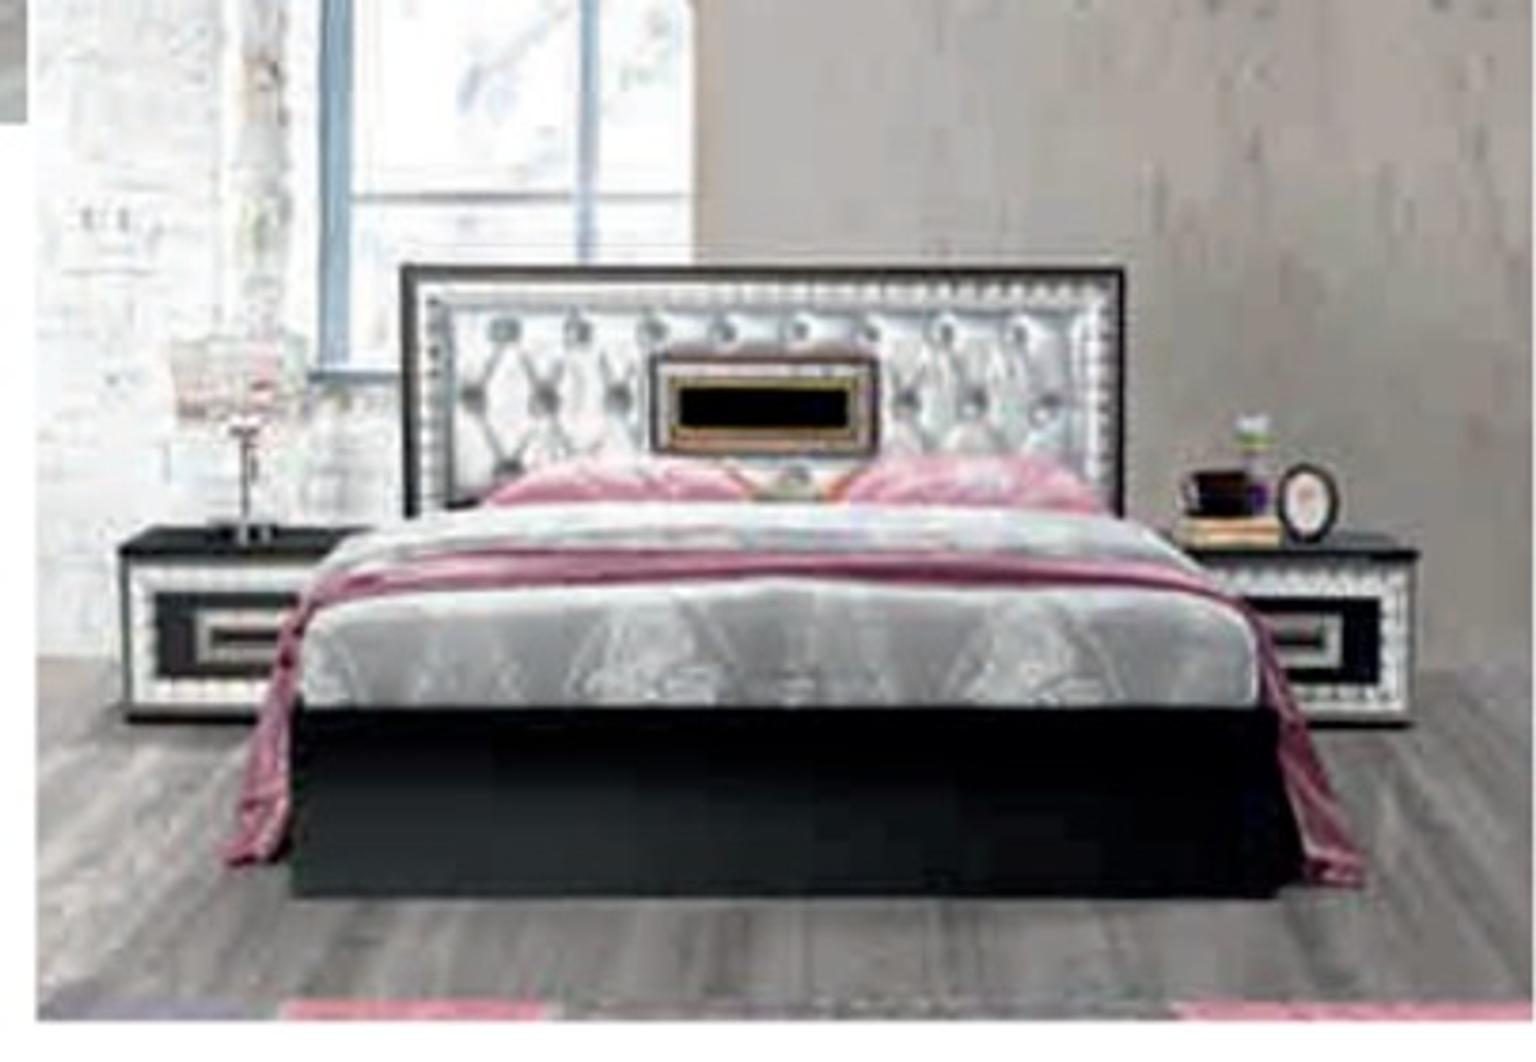 Dubai Complete Bed Set Big Sale Then Ever In E1 0ae London Fur 849